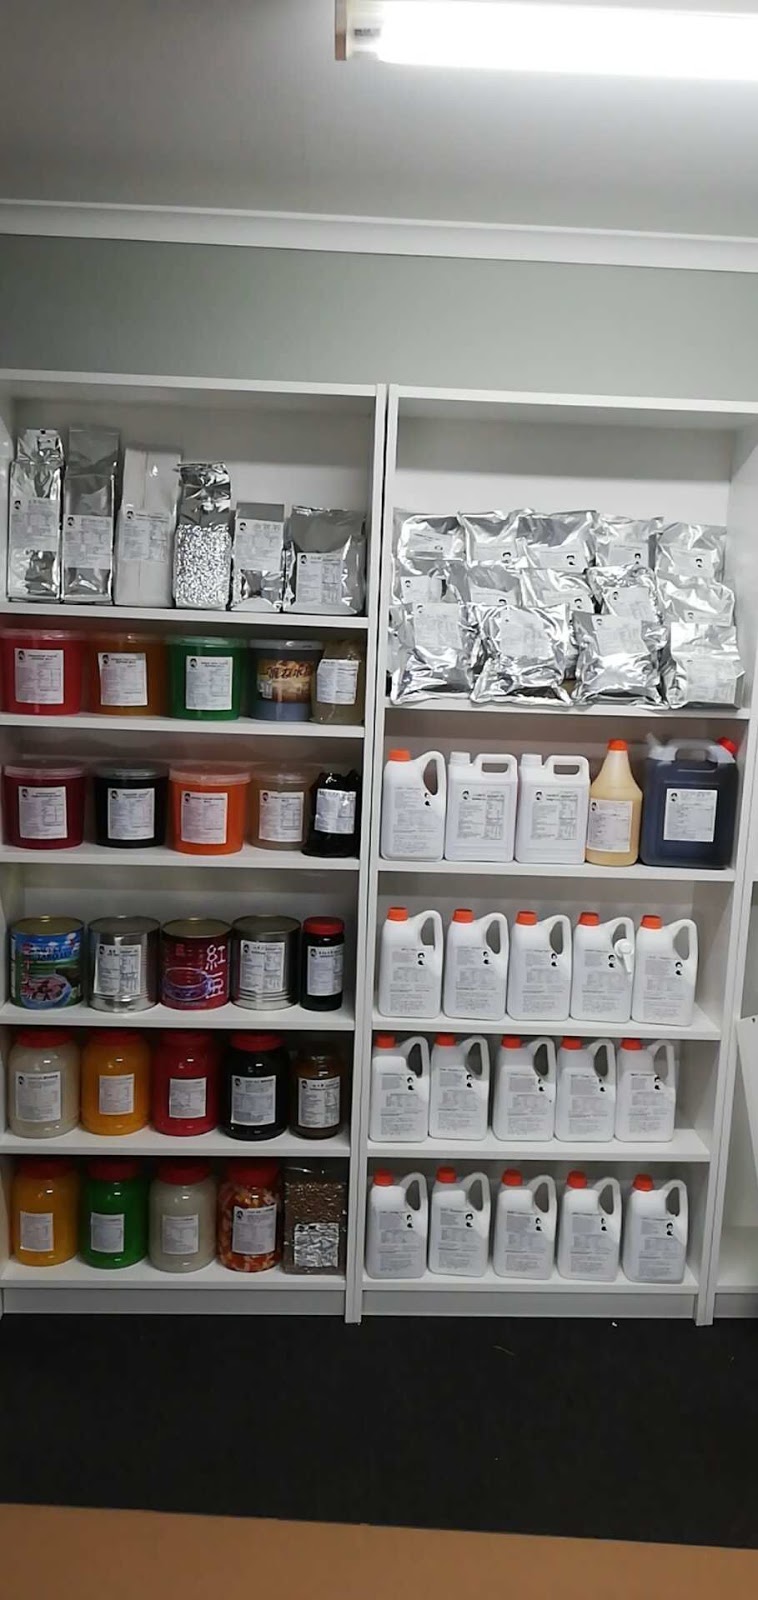 UTEA-Bubble Tea Supplier & Wholesale | cafe | 71 Parkhurst Dr, Knoxfield VIC 3180, Australia | 0429180864 OR +61 429 180 864